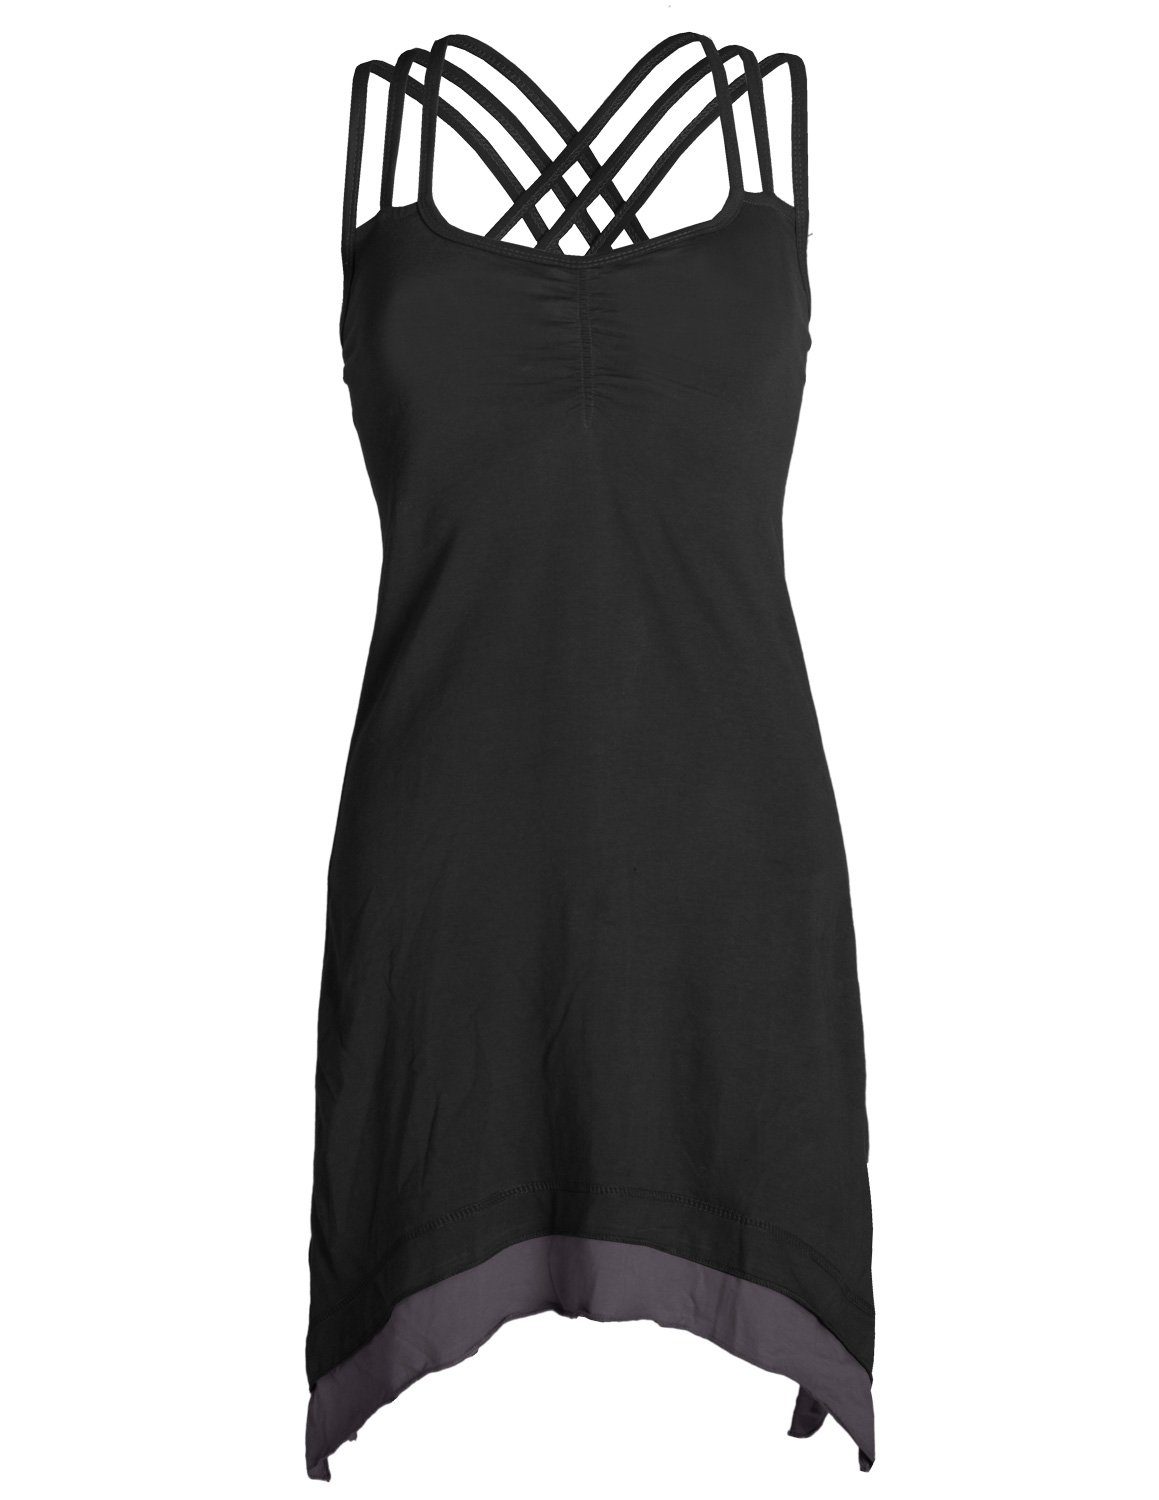 Vishes Sommerkleid Hippie, Lagenlook Boho schwarz mit Elfen, Cotton Organic Style Trägerkleid Zipfeln